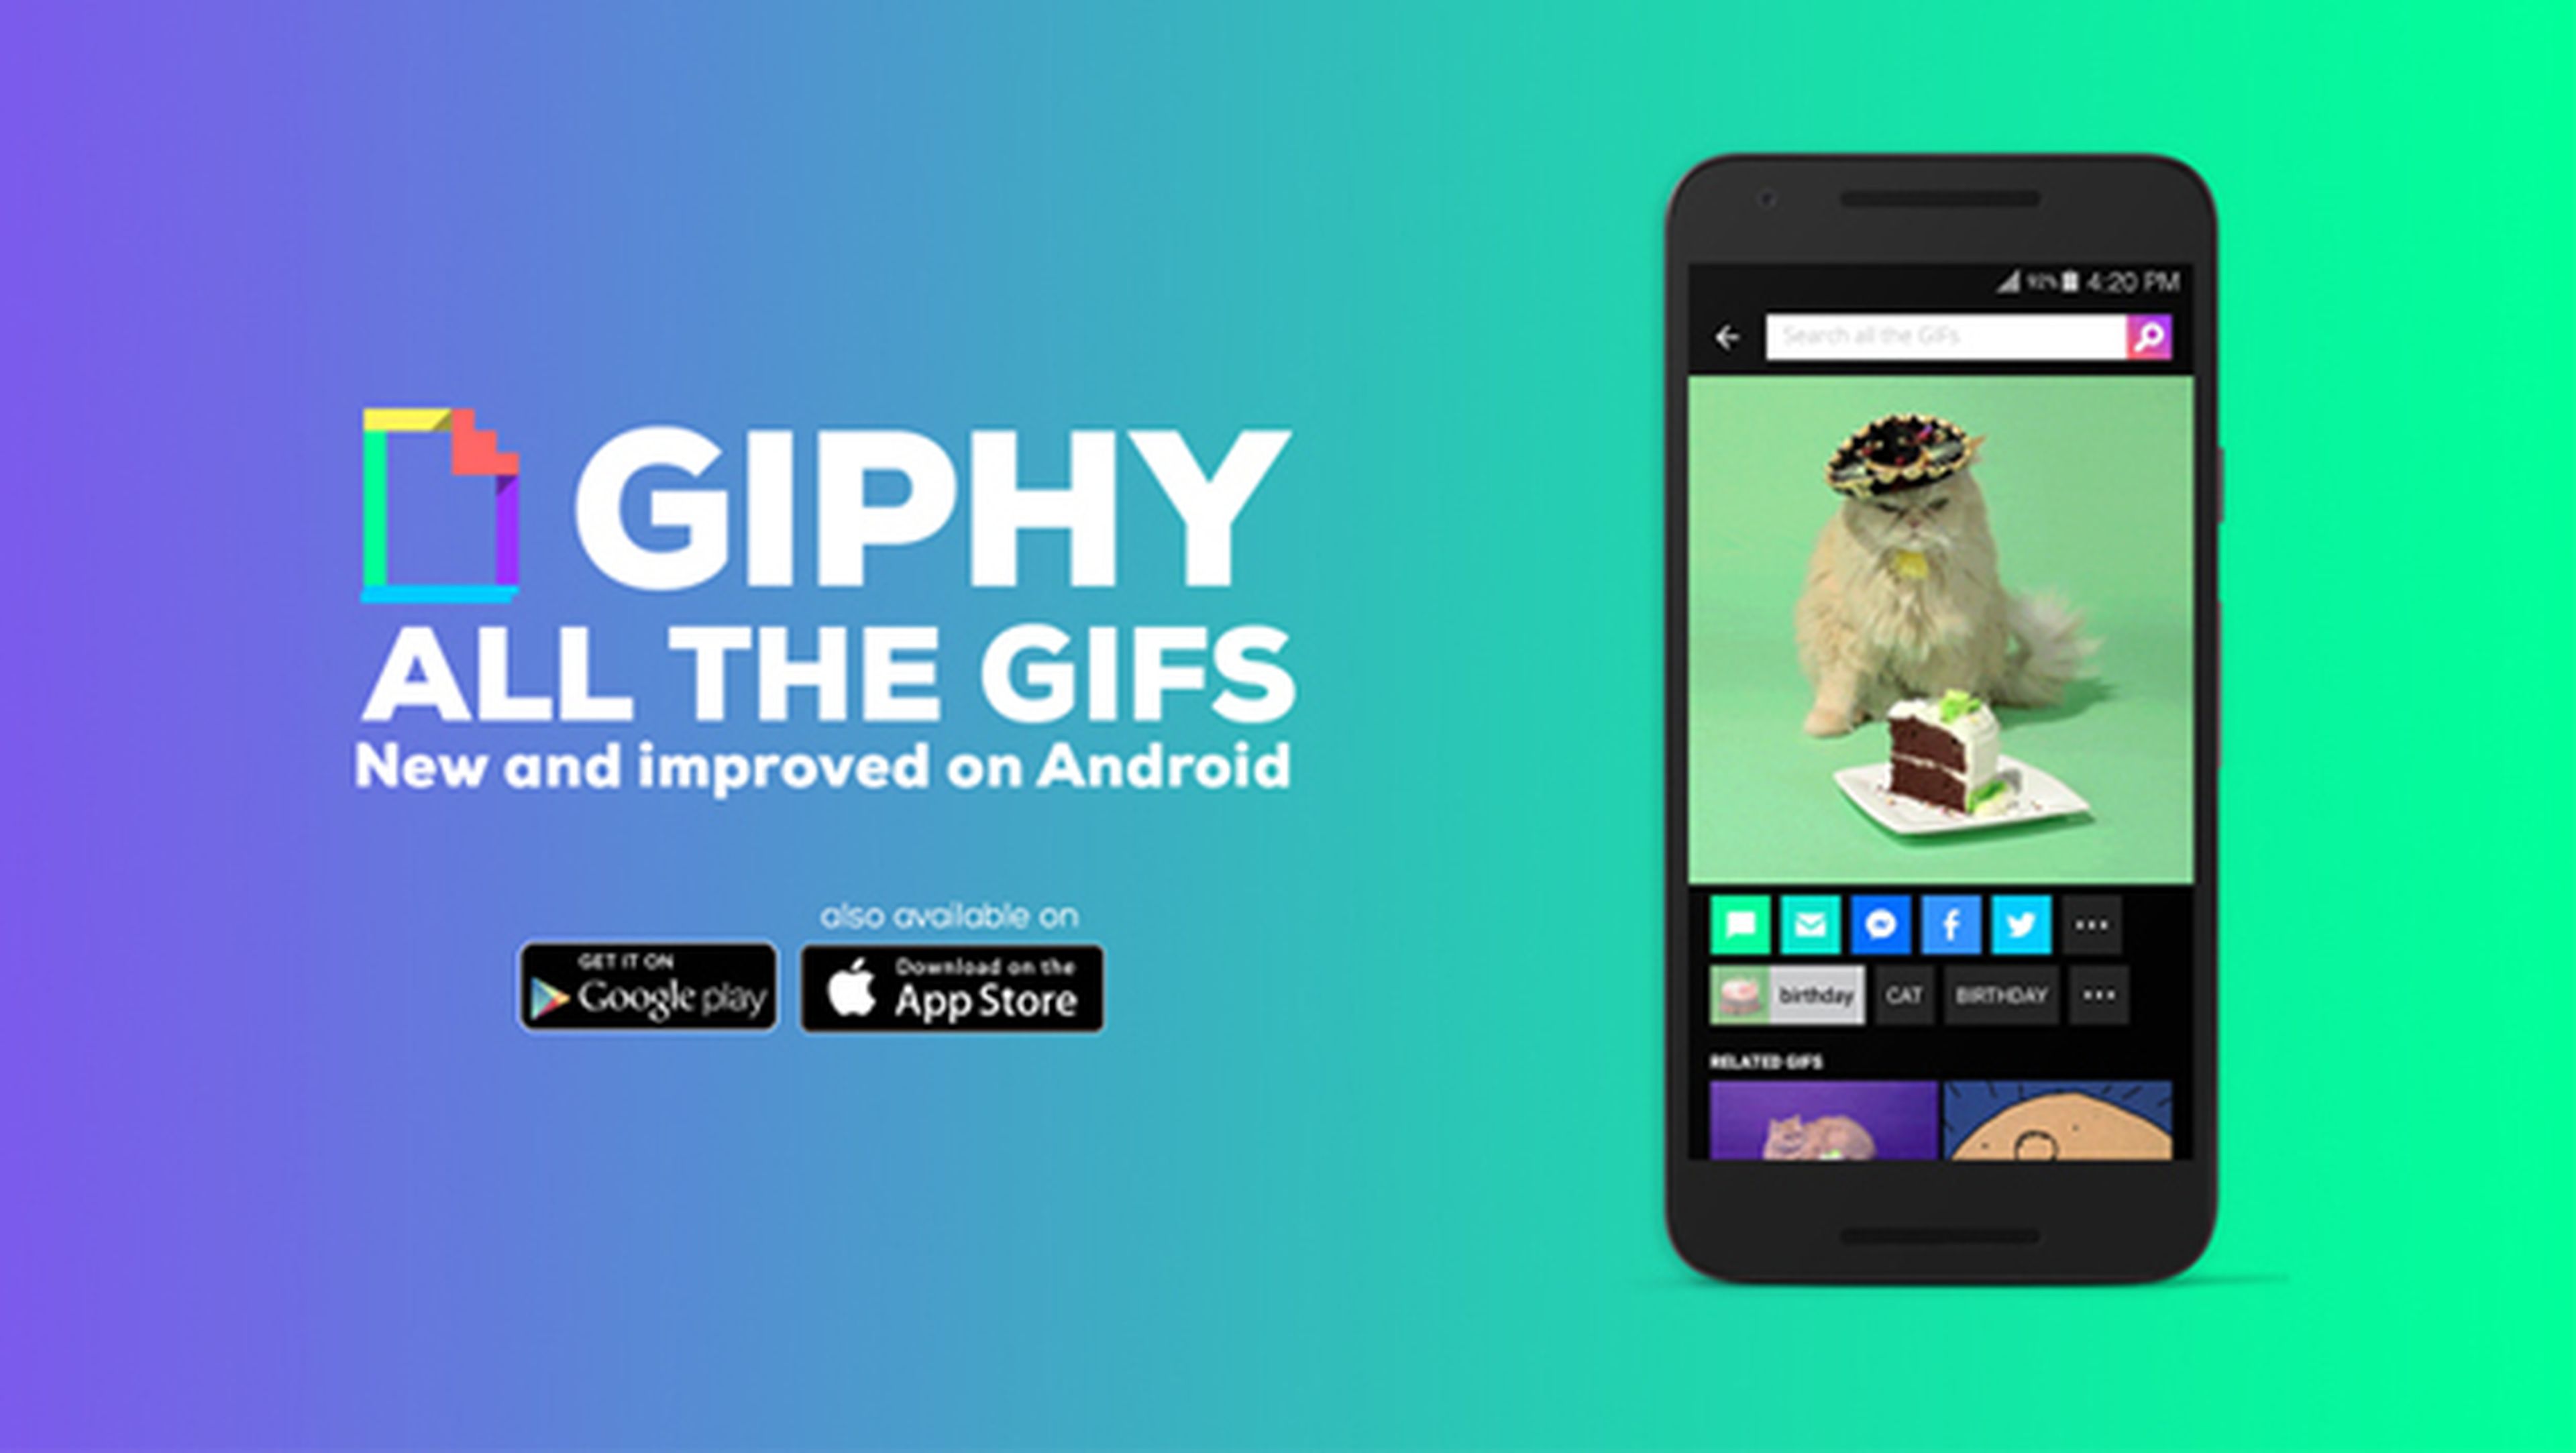 Ya puedes buscar y compartir GIF en Android con Giphy